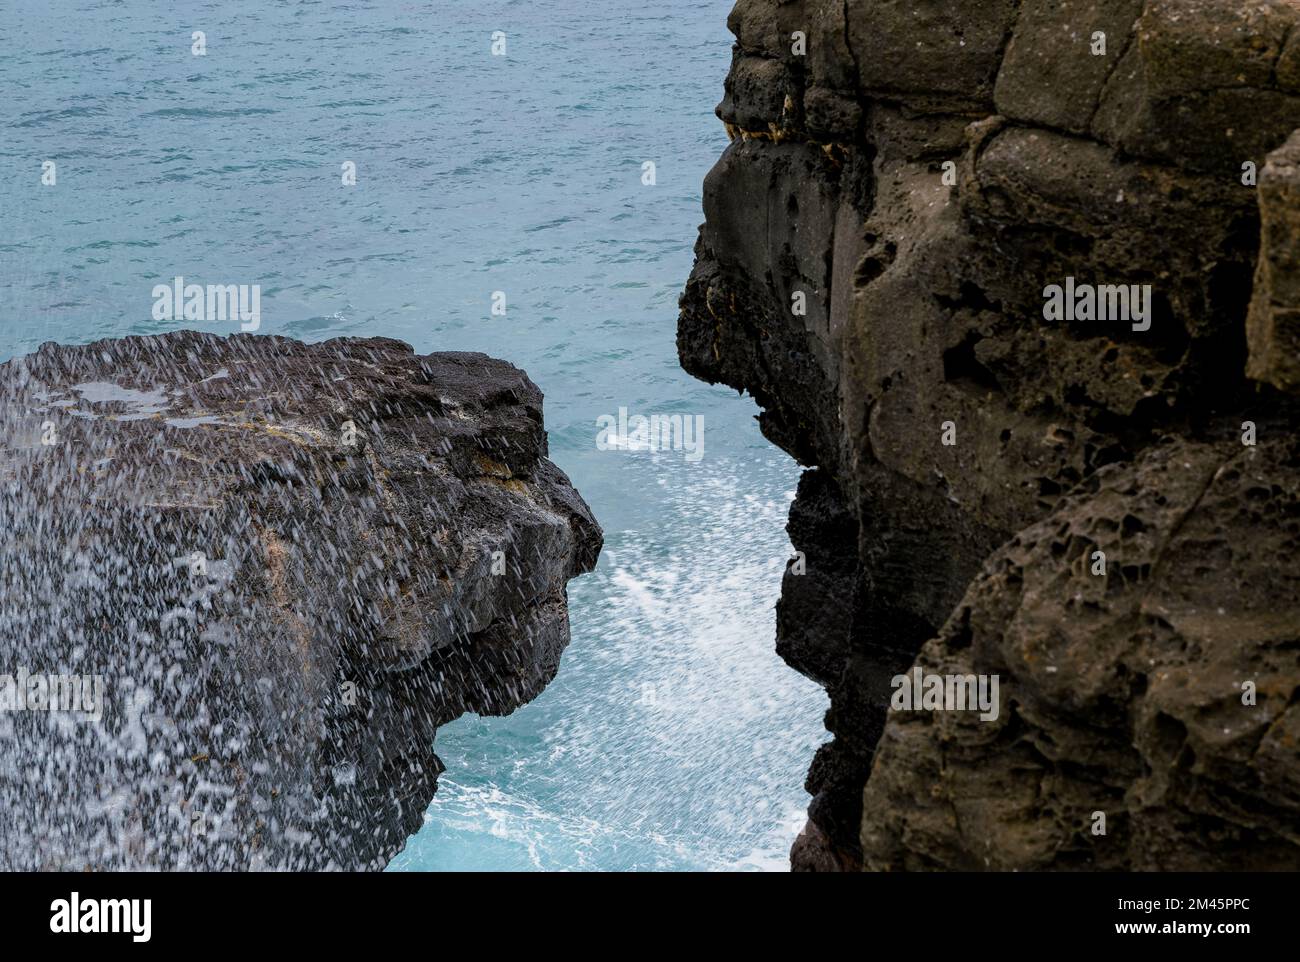 La roche de pleuring (nom de frech : la roche qui pleure) est une splendide formation géologique dans le sud de l'île Maurice. Proche de la ville de Souillac sur la plage de gris gris. Banque D'Images